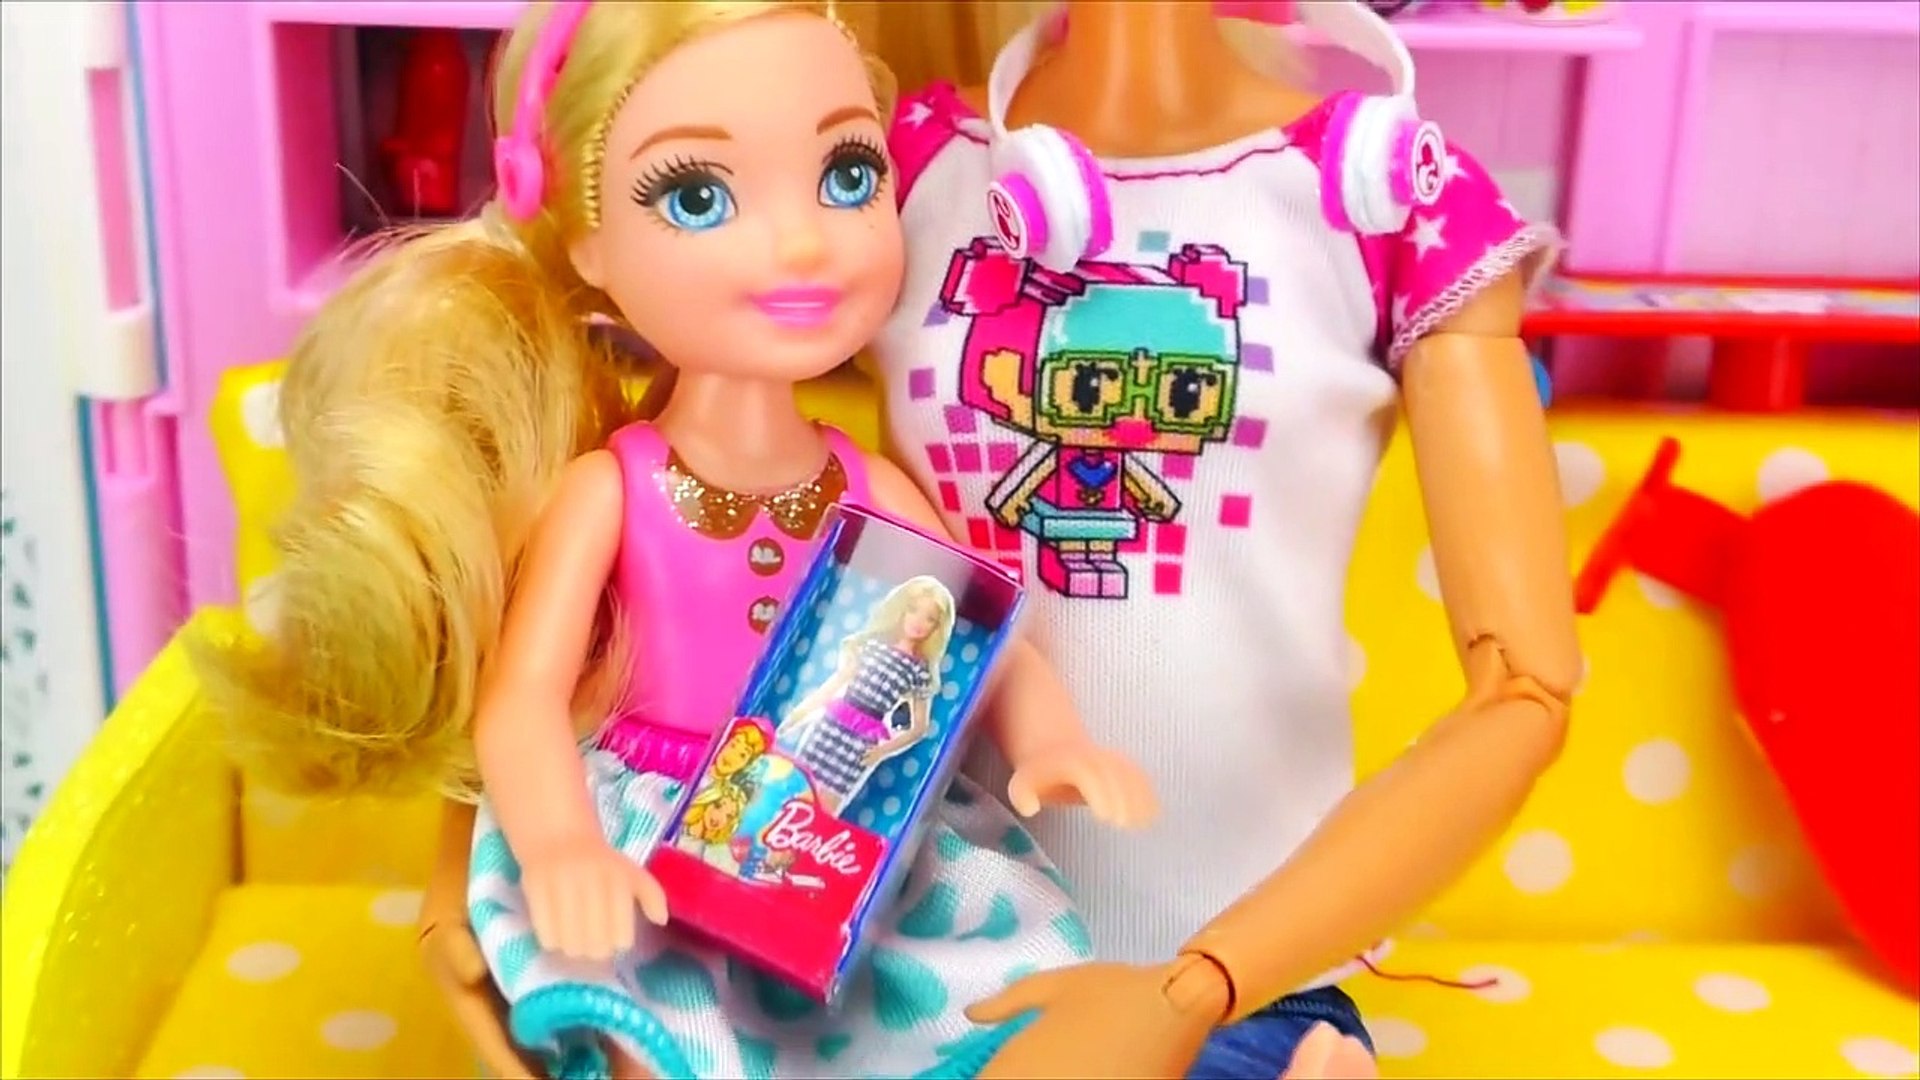 10 DIY Barbie Hacks Miniature Barbie Doll, Ipad, Headphones, More Barbie  Crafts - video Dailymotion